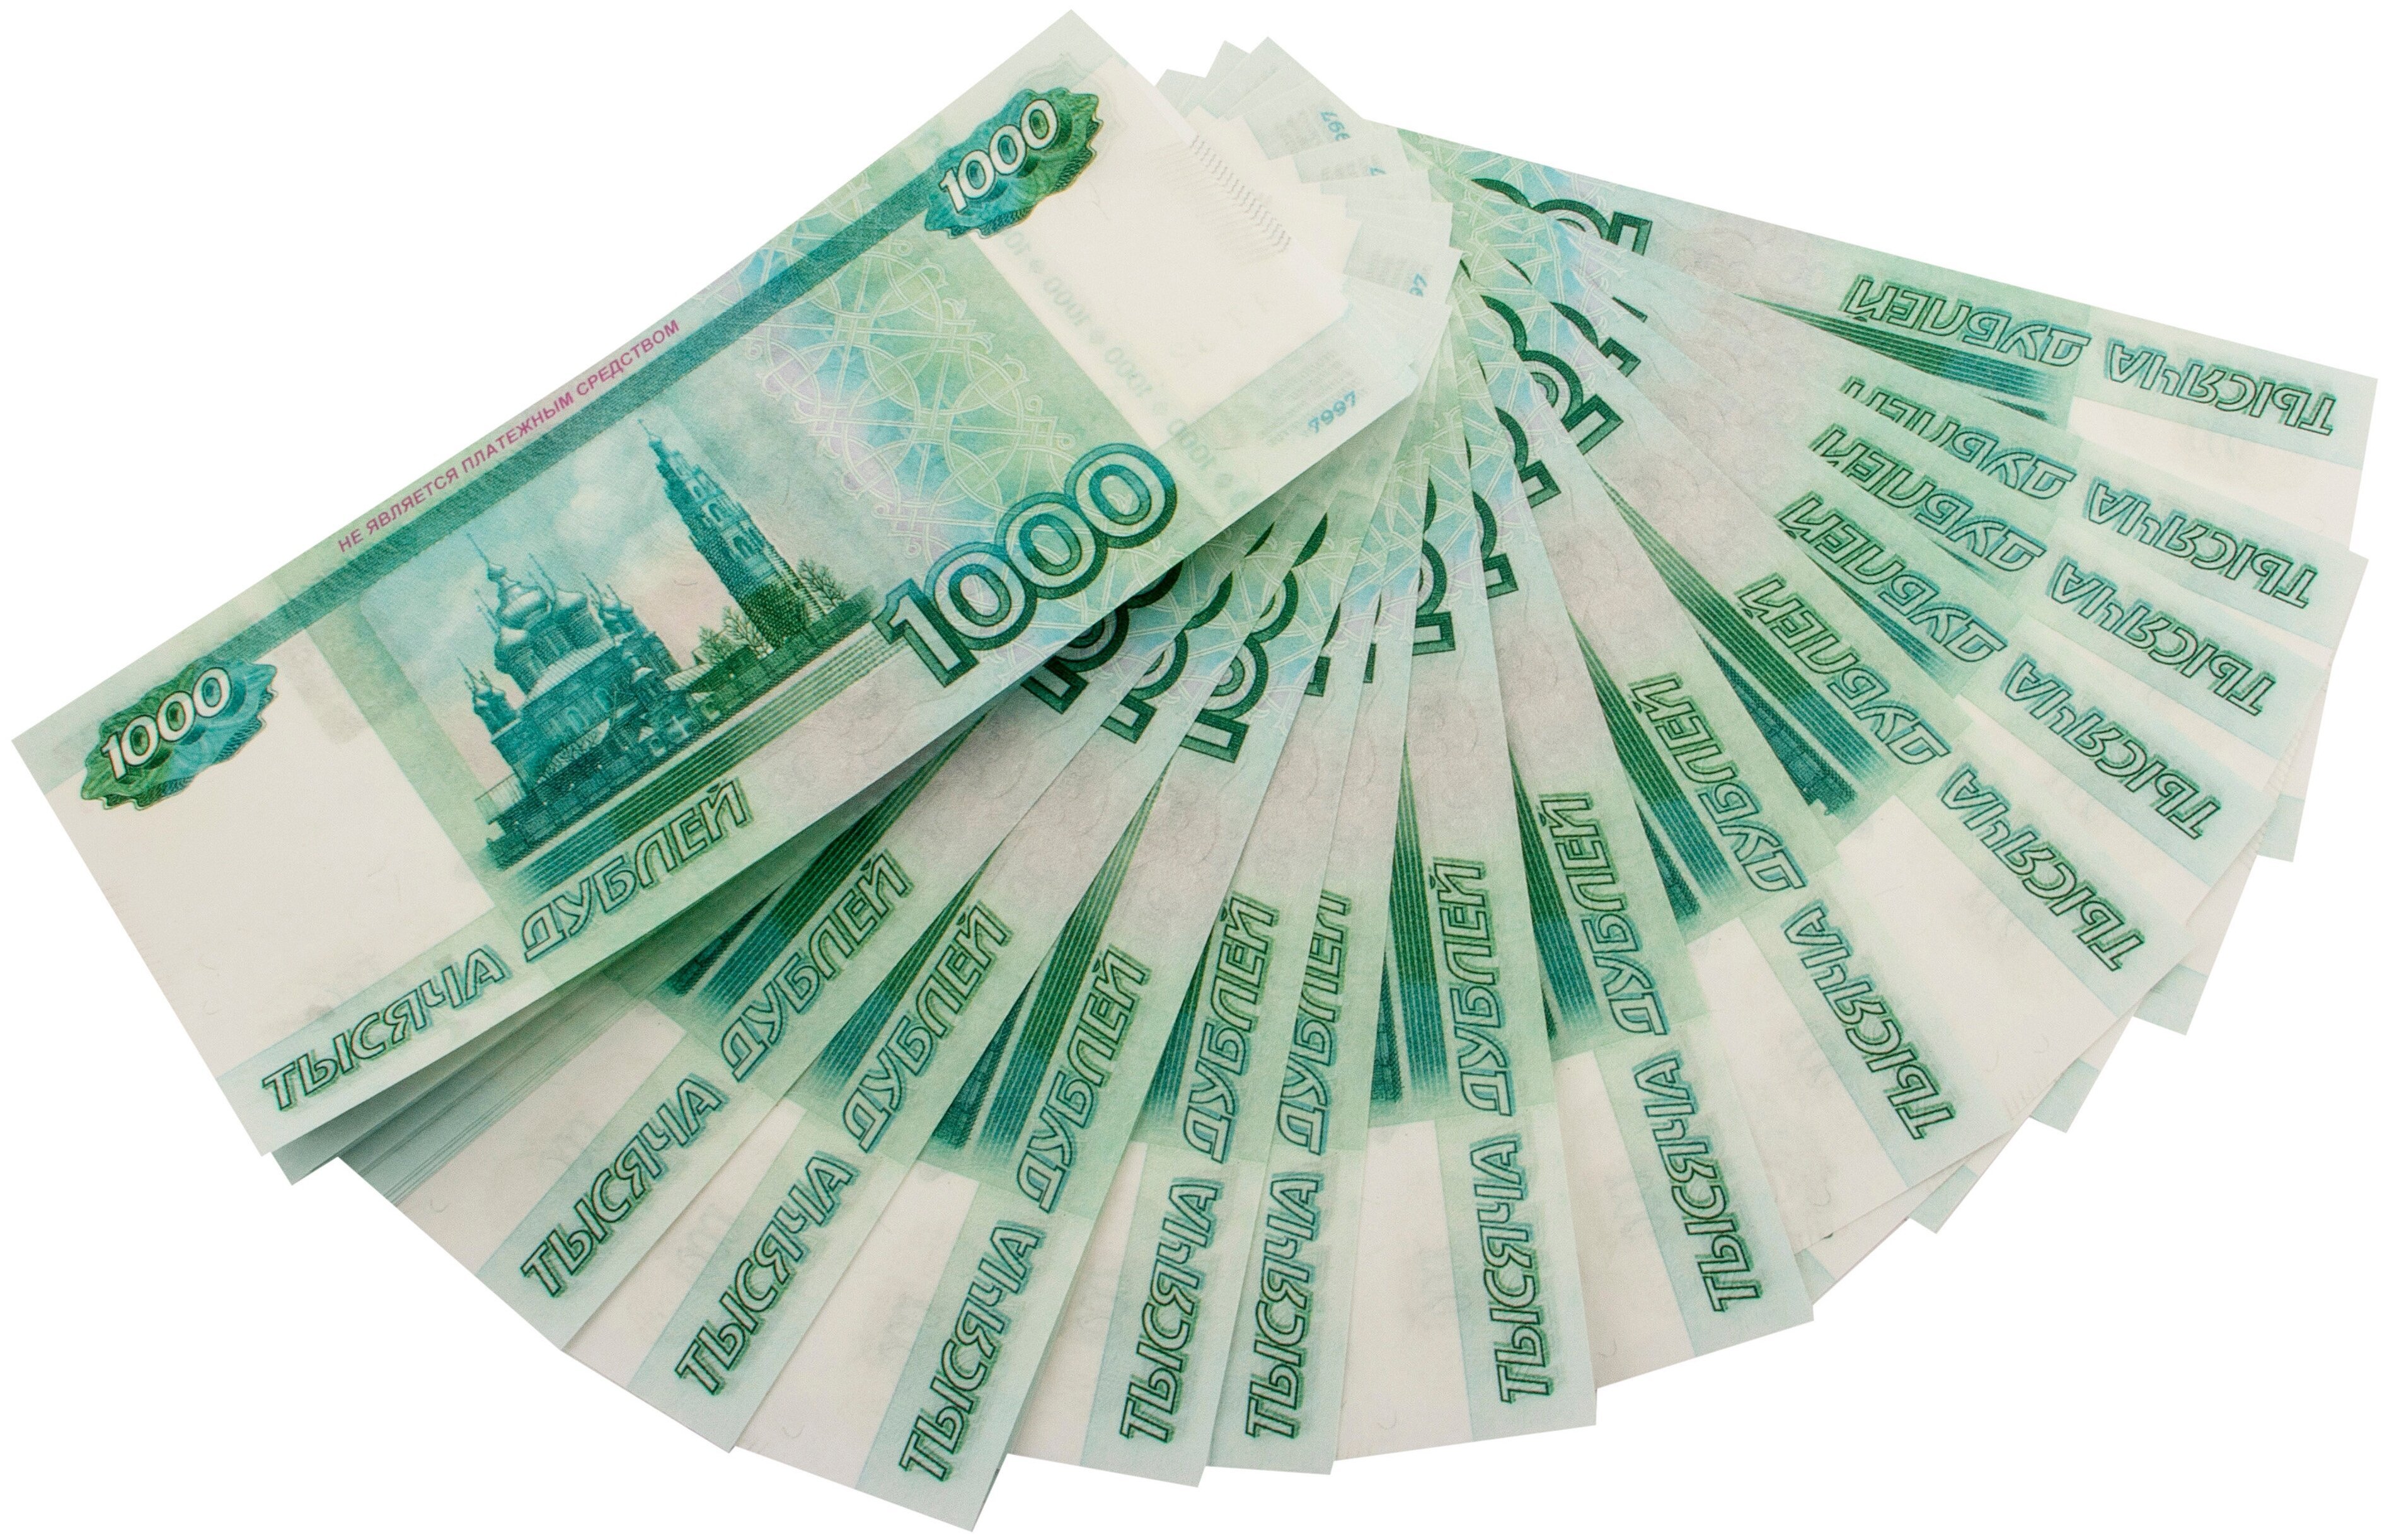 1000 рублей за кг. Купюры на белом фоне. 1000 Рублей пачка. Деньги на белом фоне. Деньги рубли на белом фоне.